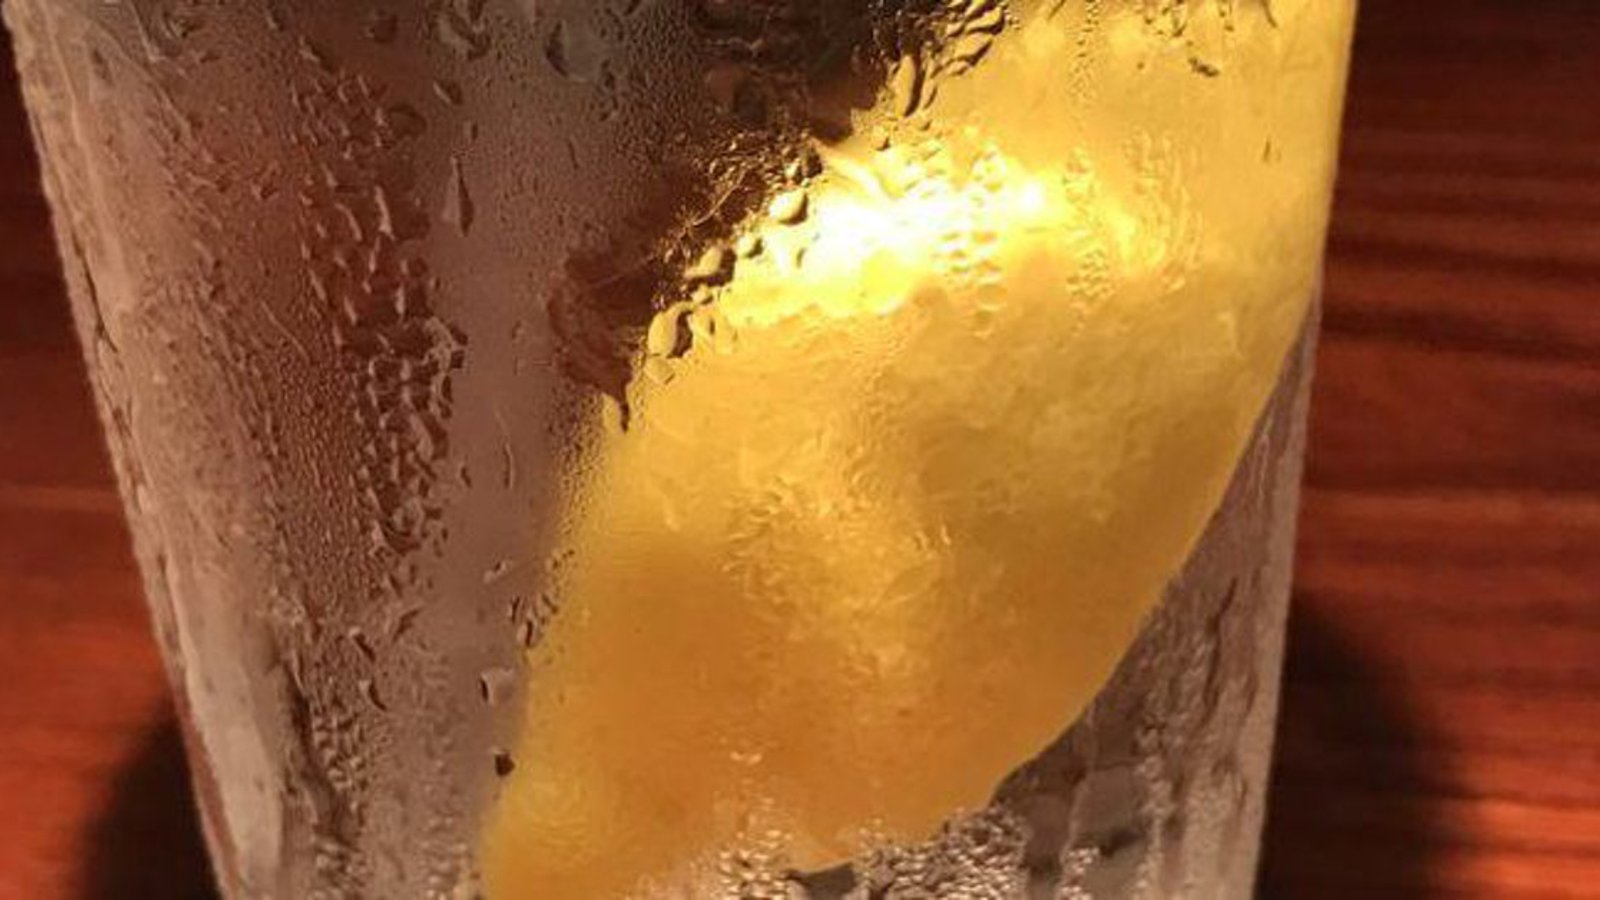 Quand vous êtes au restaurant, demandez-vous un citron dans votre verre d'eau? Si c'est le cas, arrêtez tout de suite de le faire! 